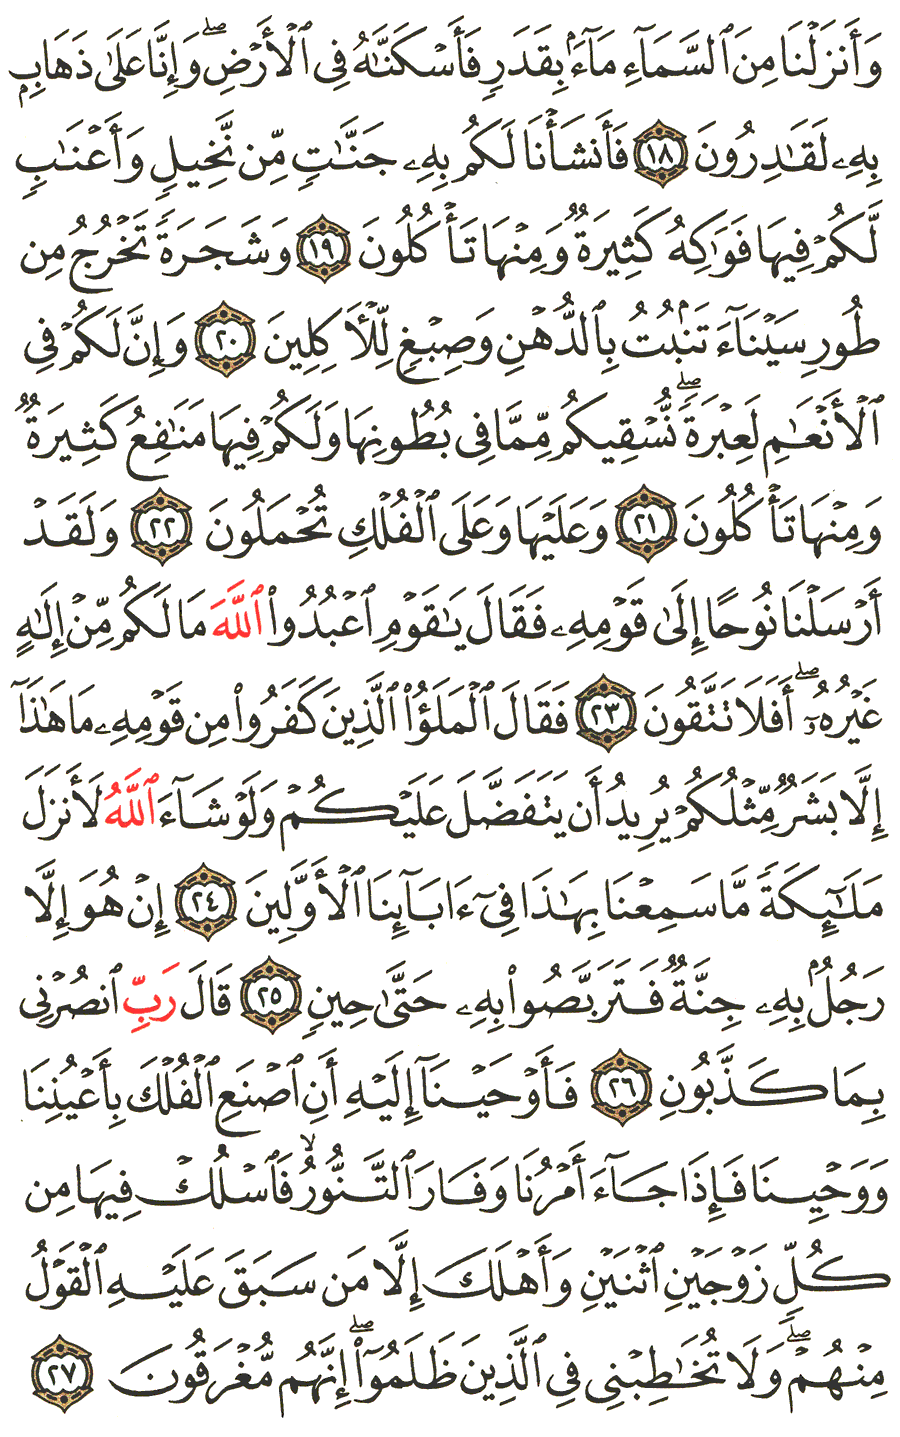 الصفحة 343 من القرآن الكريم